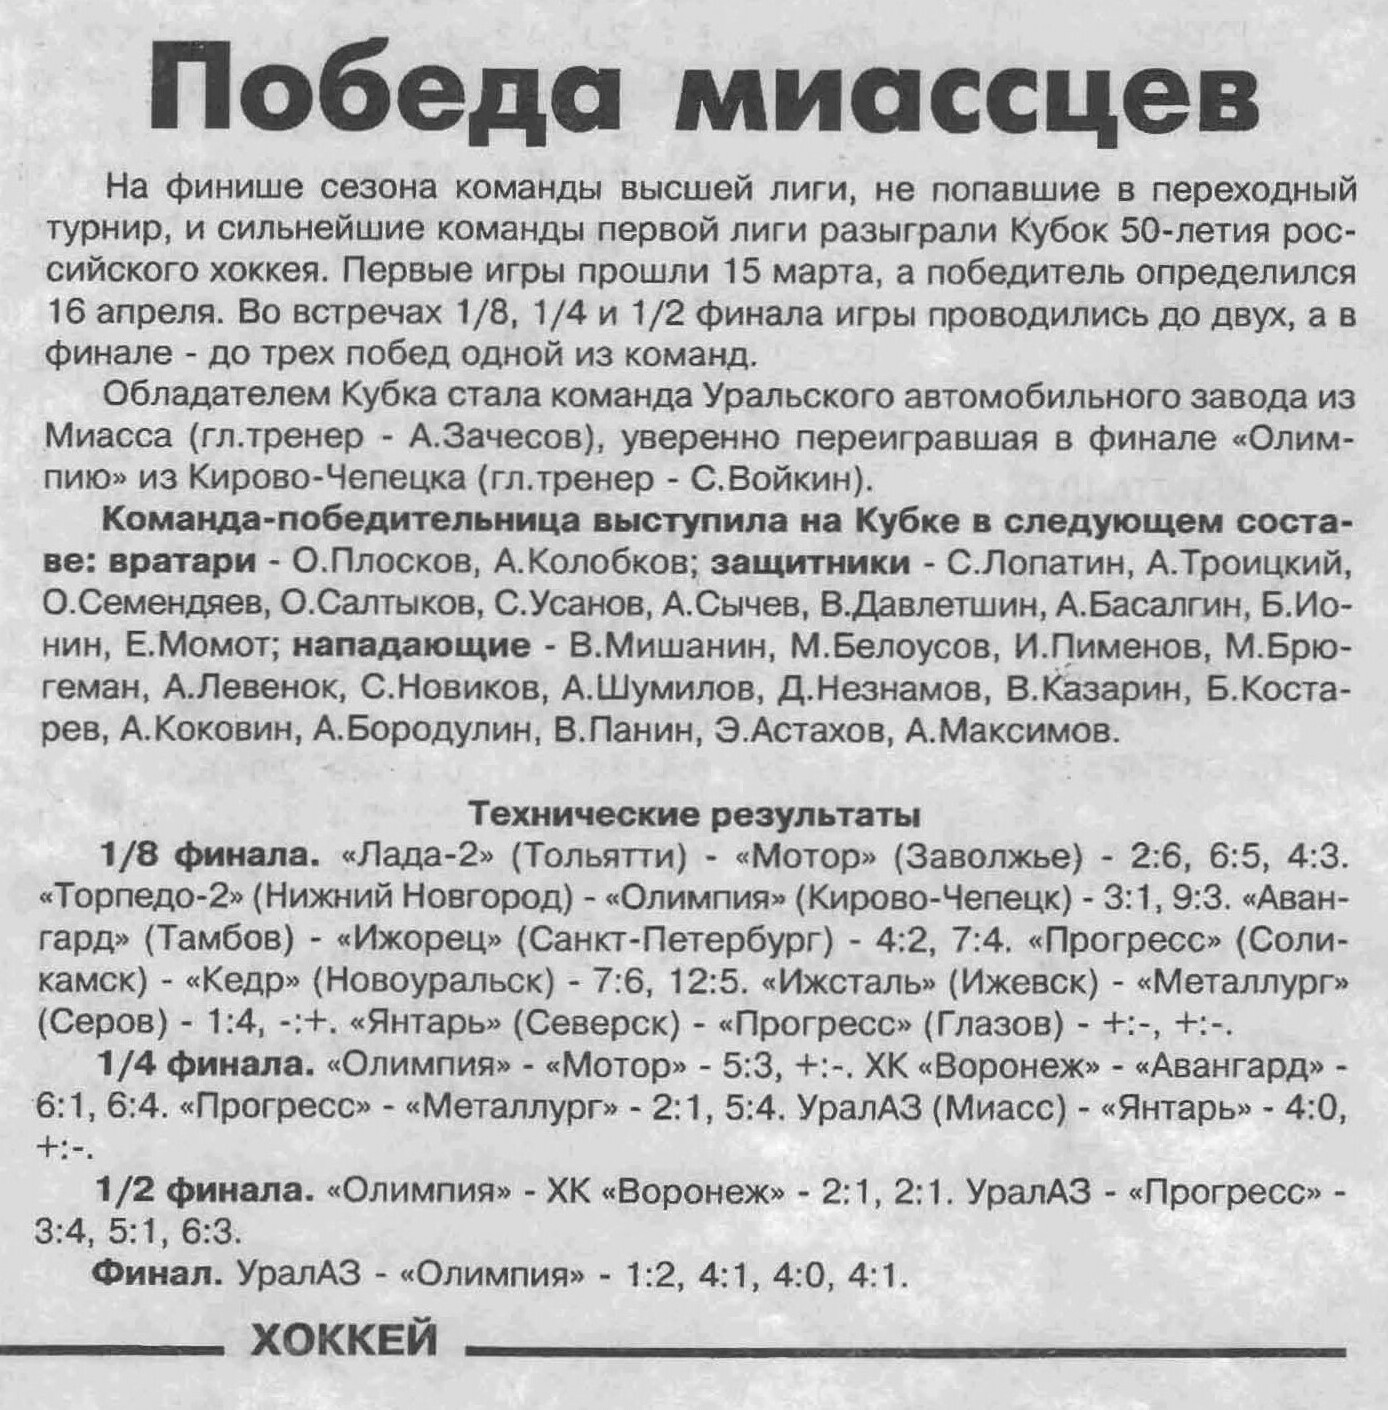 Еженедельник "Хоккей" №320-328 от 28.05.1997г.